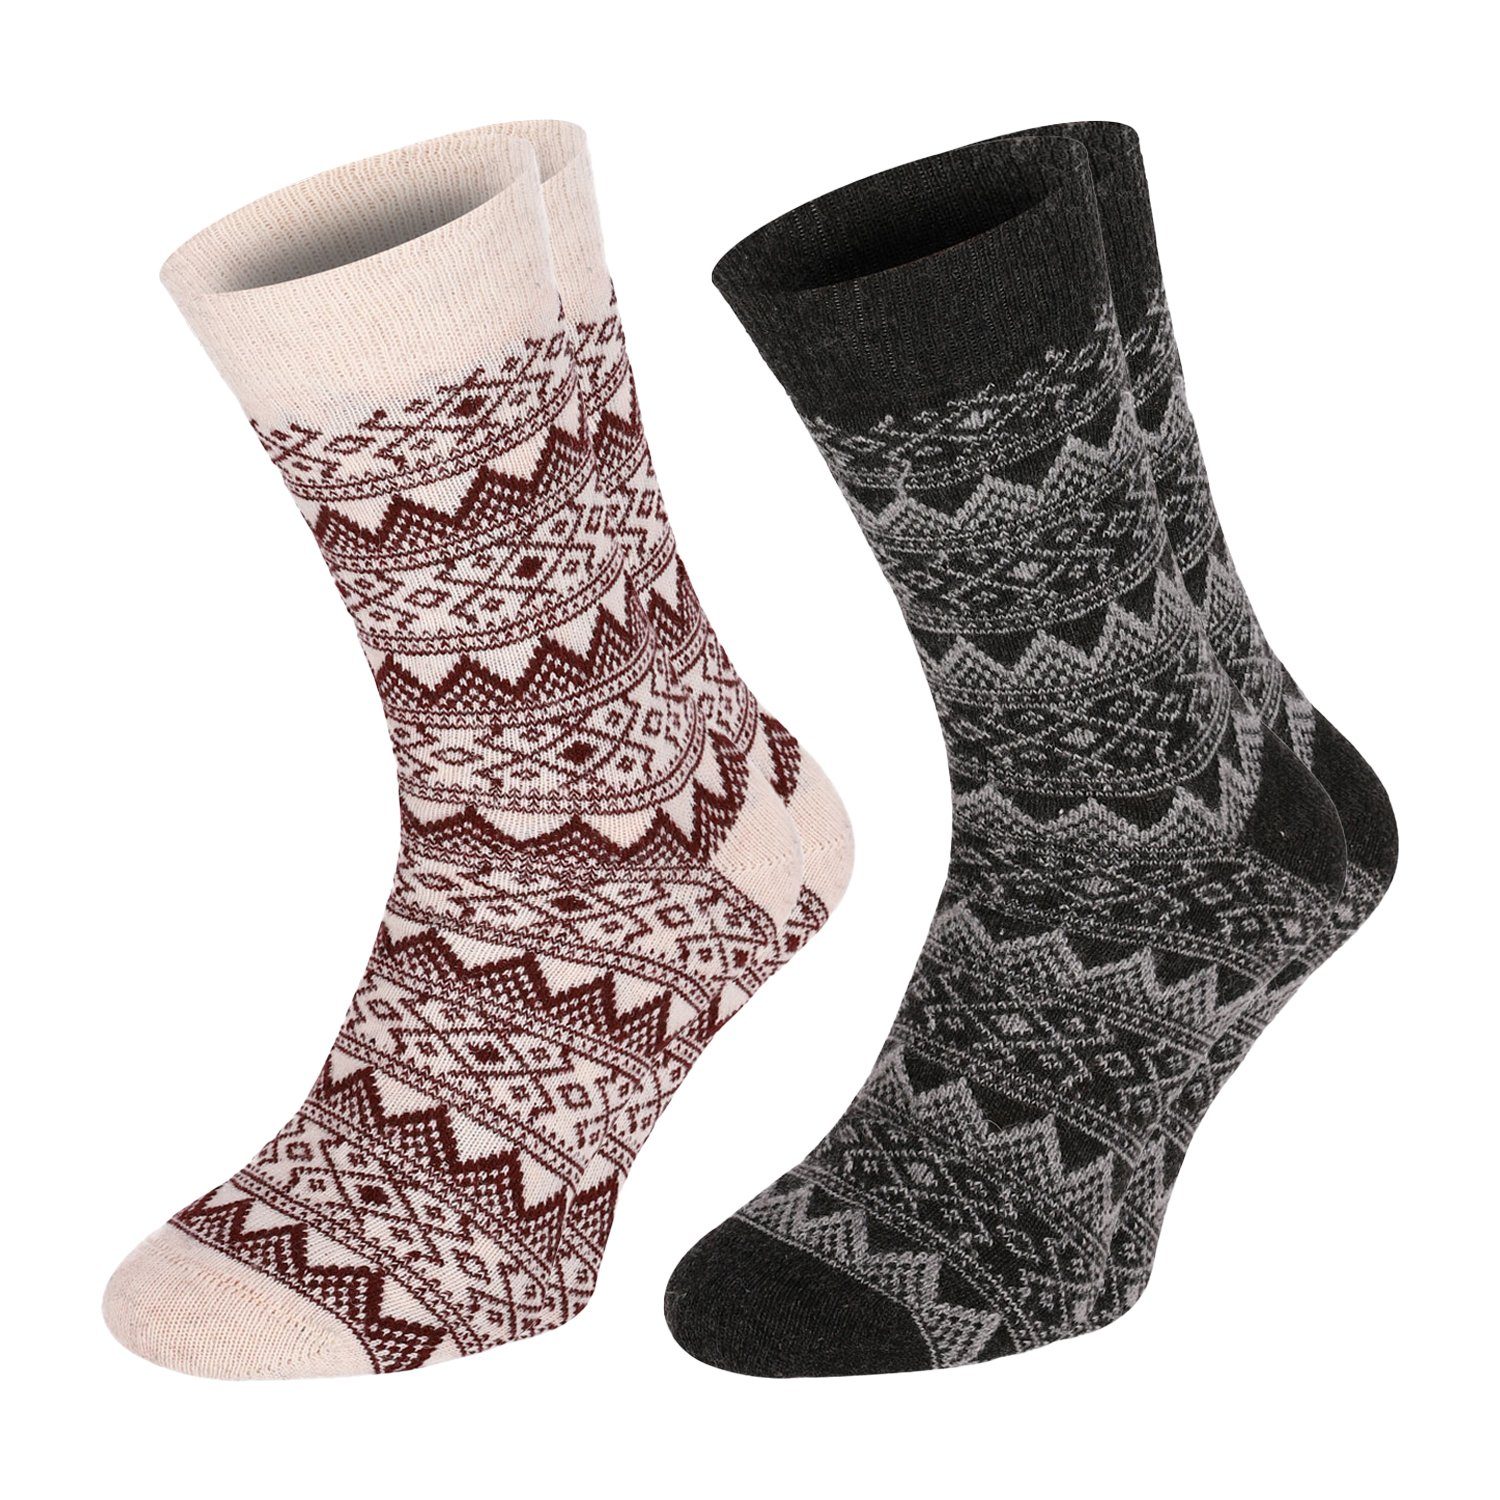 Chili Lifestyle Strümpfe Socken Wool Classic Winter Schaf Wolle Damen  Herren Warm farbig 2 Paar